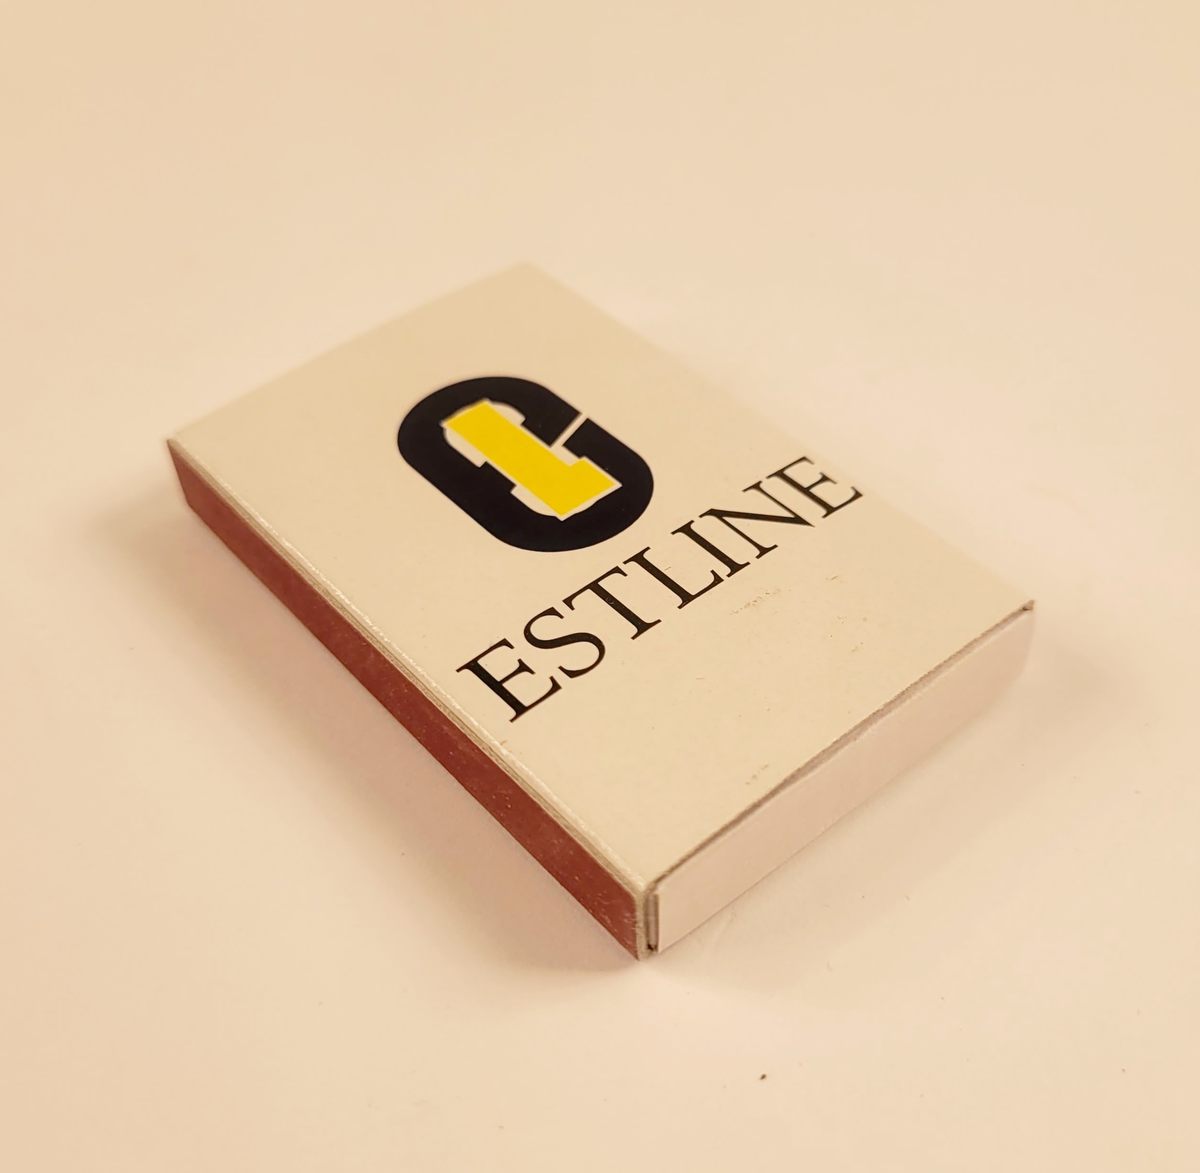 Vit tändsticksask med rederi Estlines logotyp för åren 1990-1994.